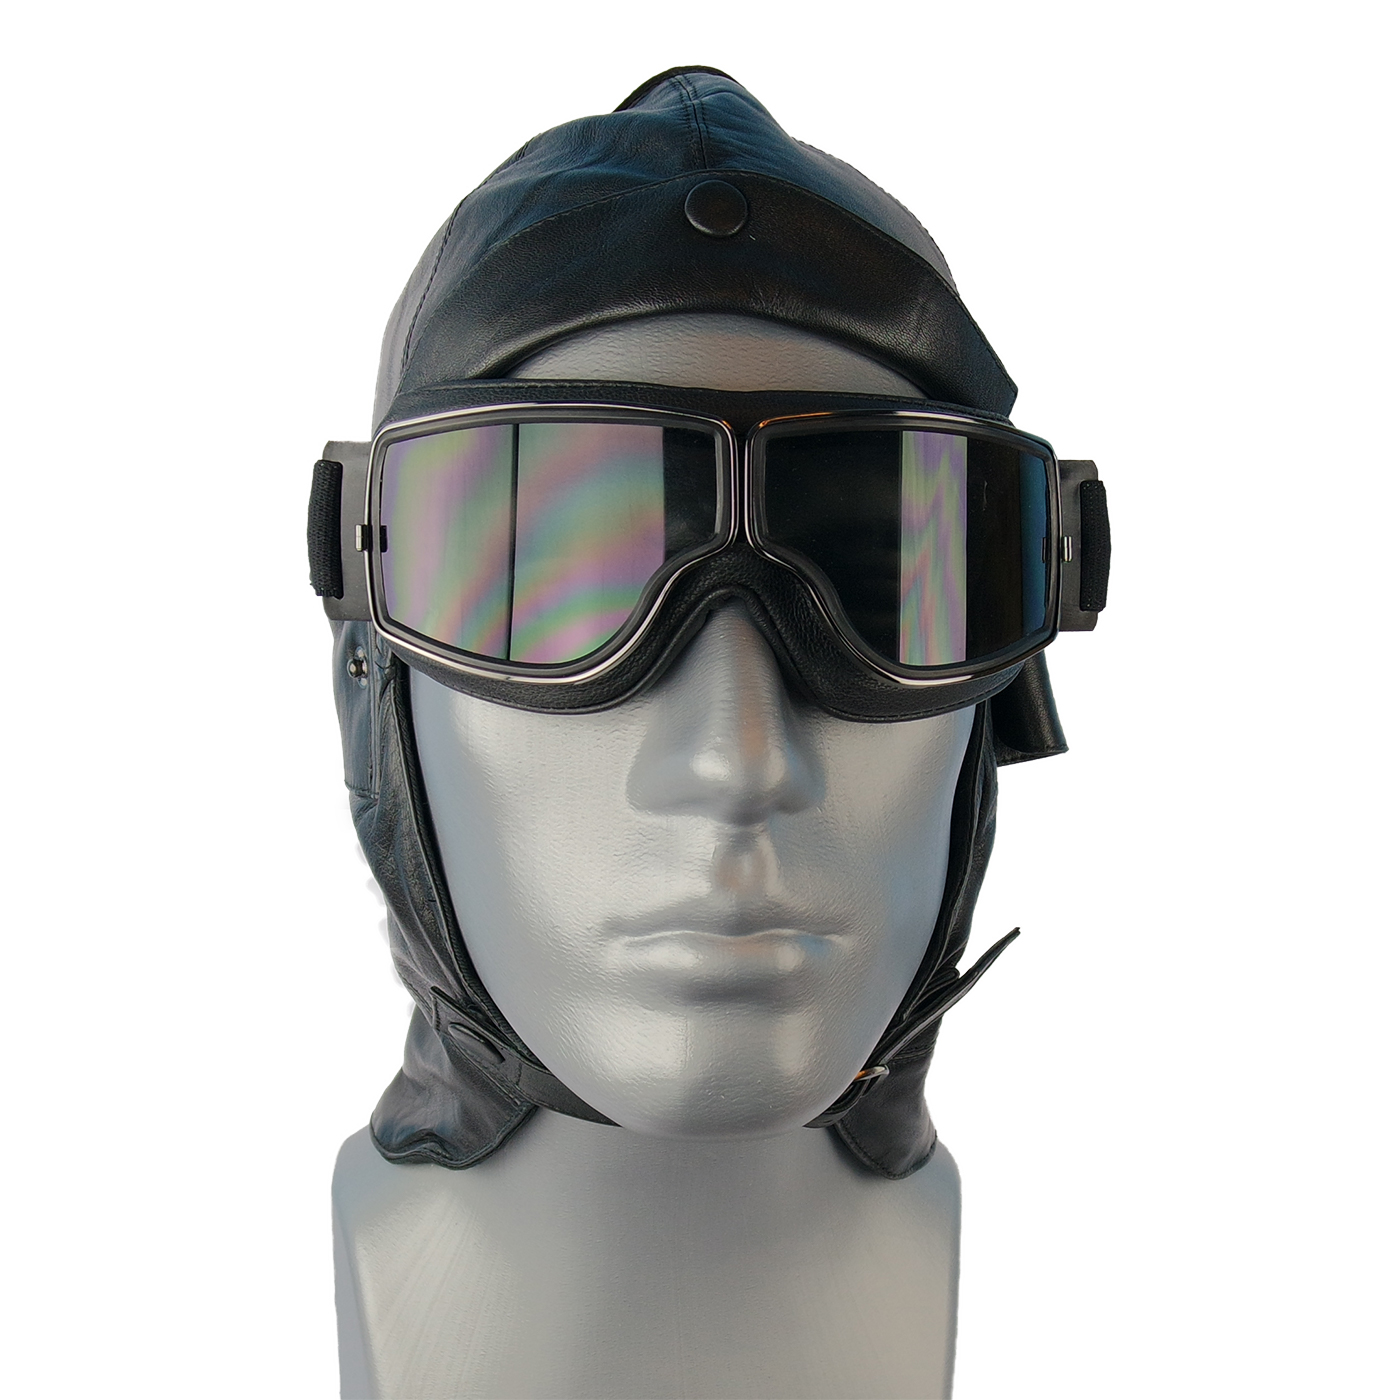 Aviator T2 Brille für Brillenträger in schwarz mit getöntem Glas rauch